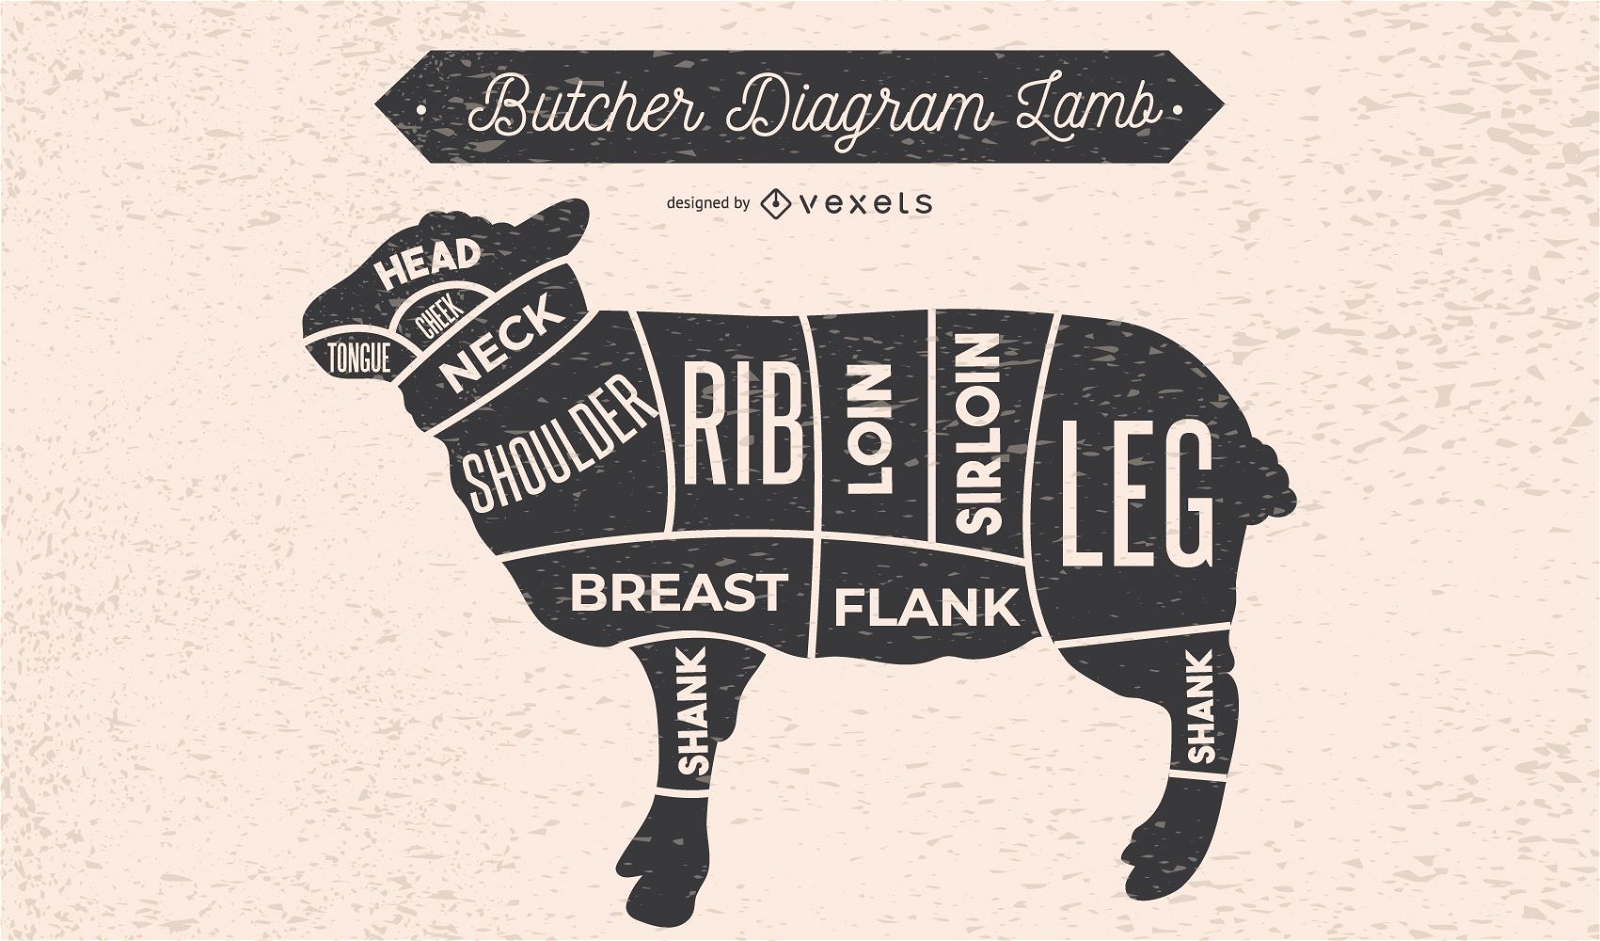 Lamb Butcher Diagram Design